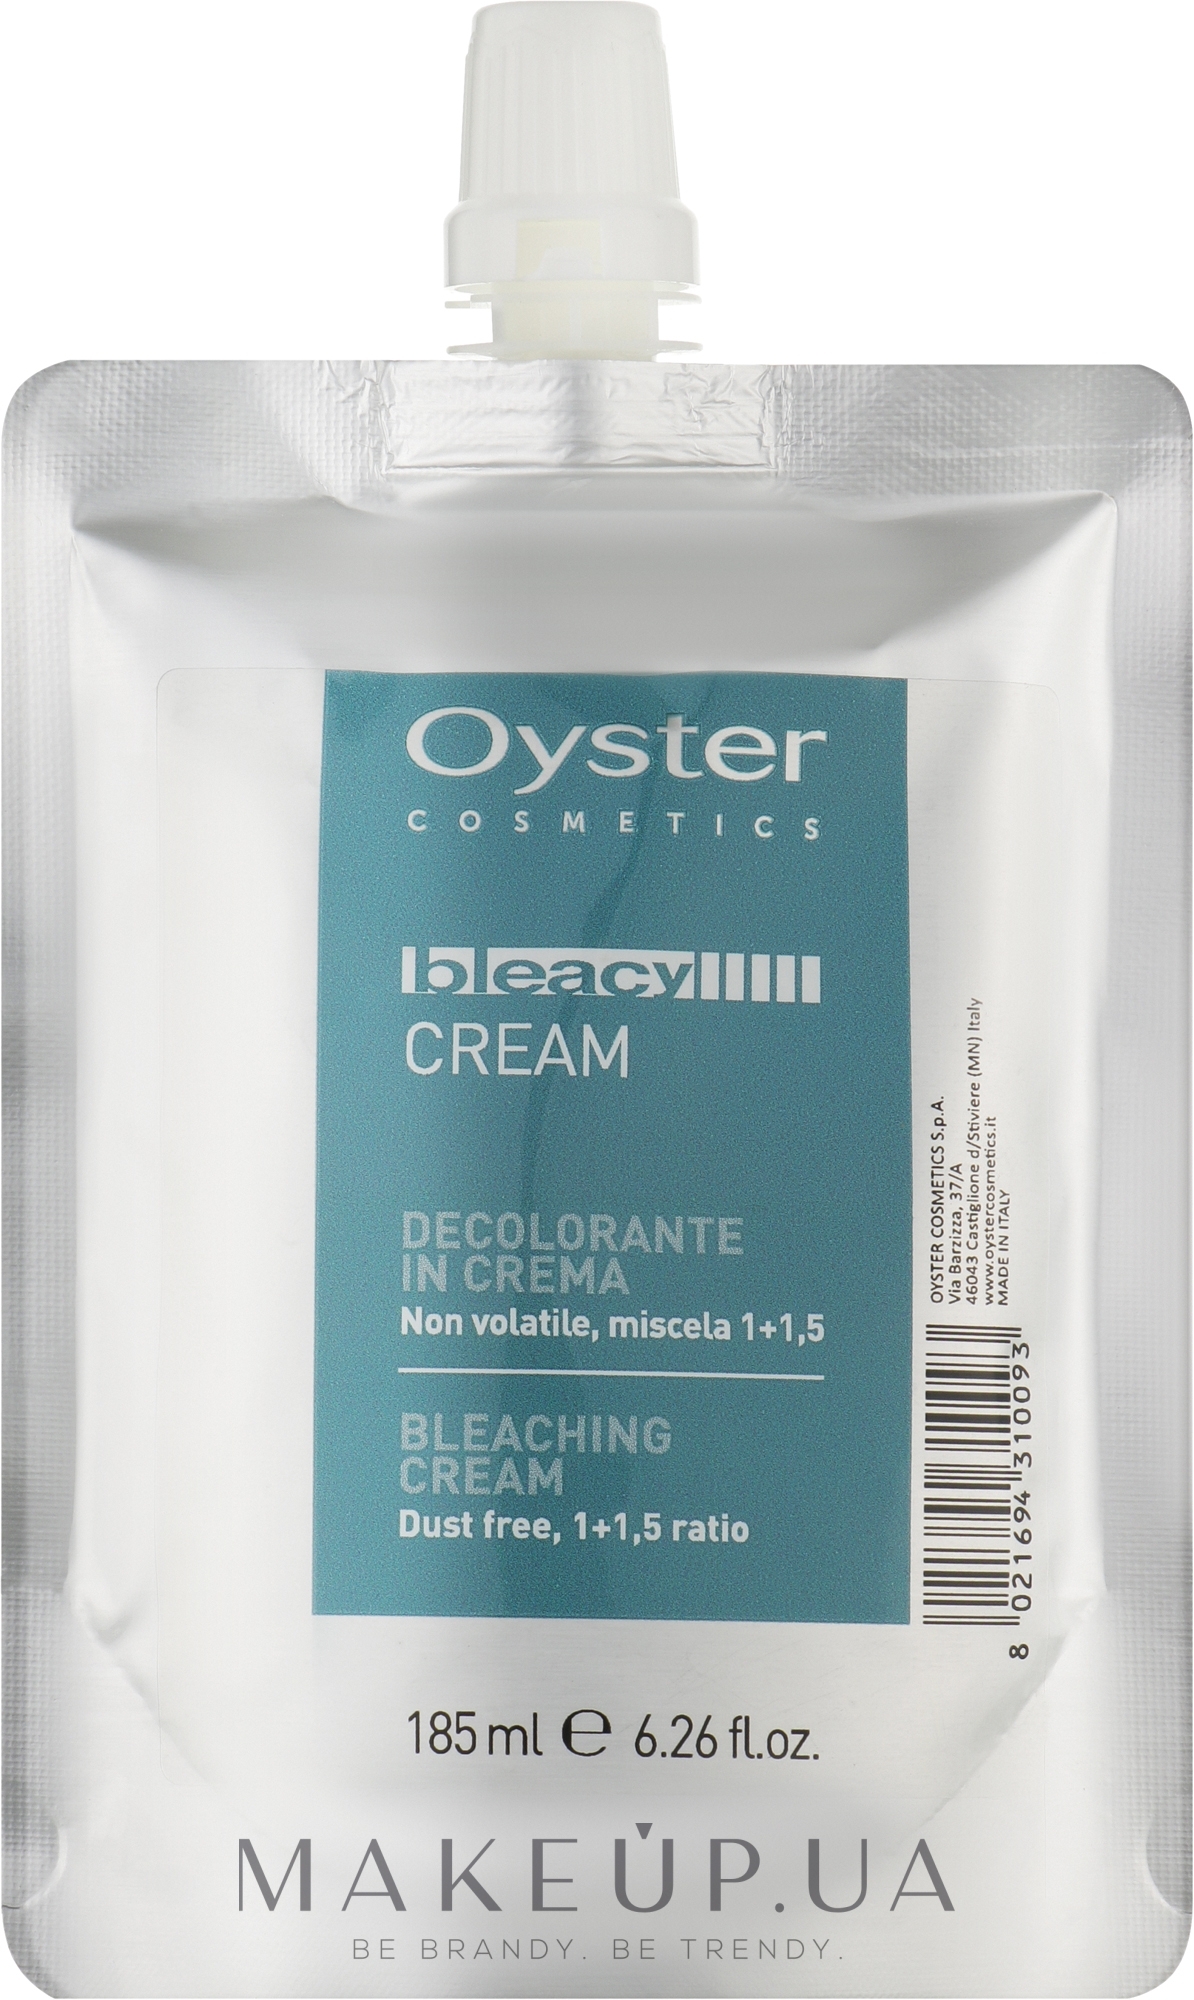 Крем для волосся освітлювальний - Oyster Cosmetics Bleacy Cream — фото 185ml